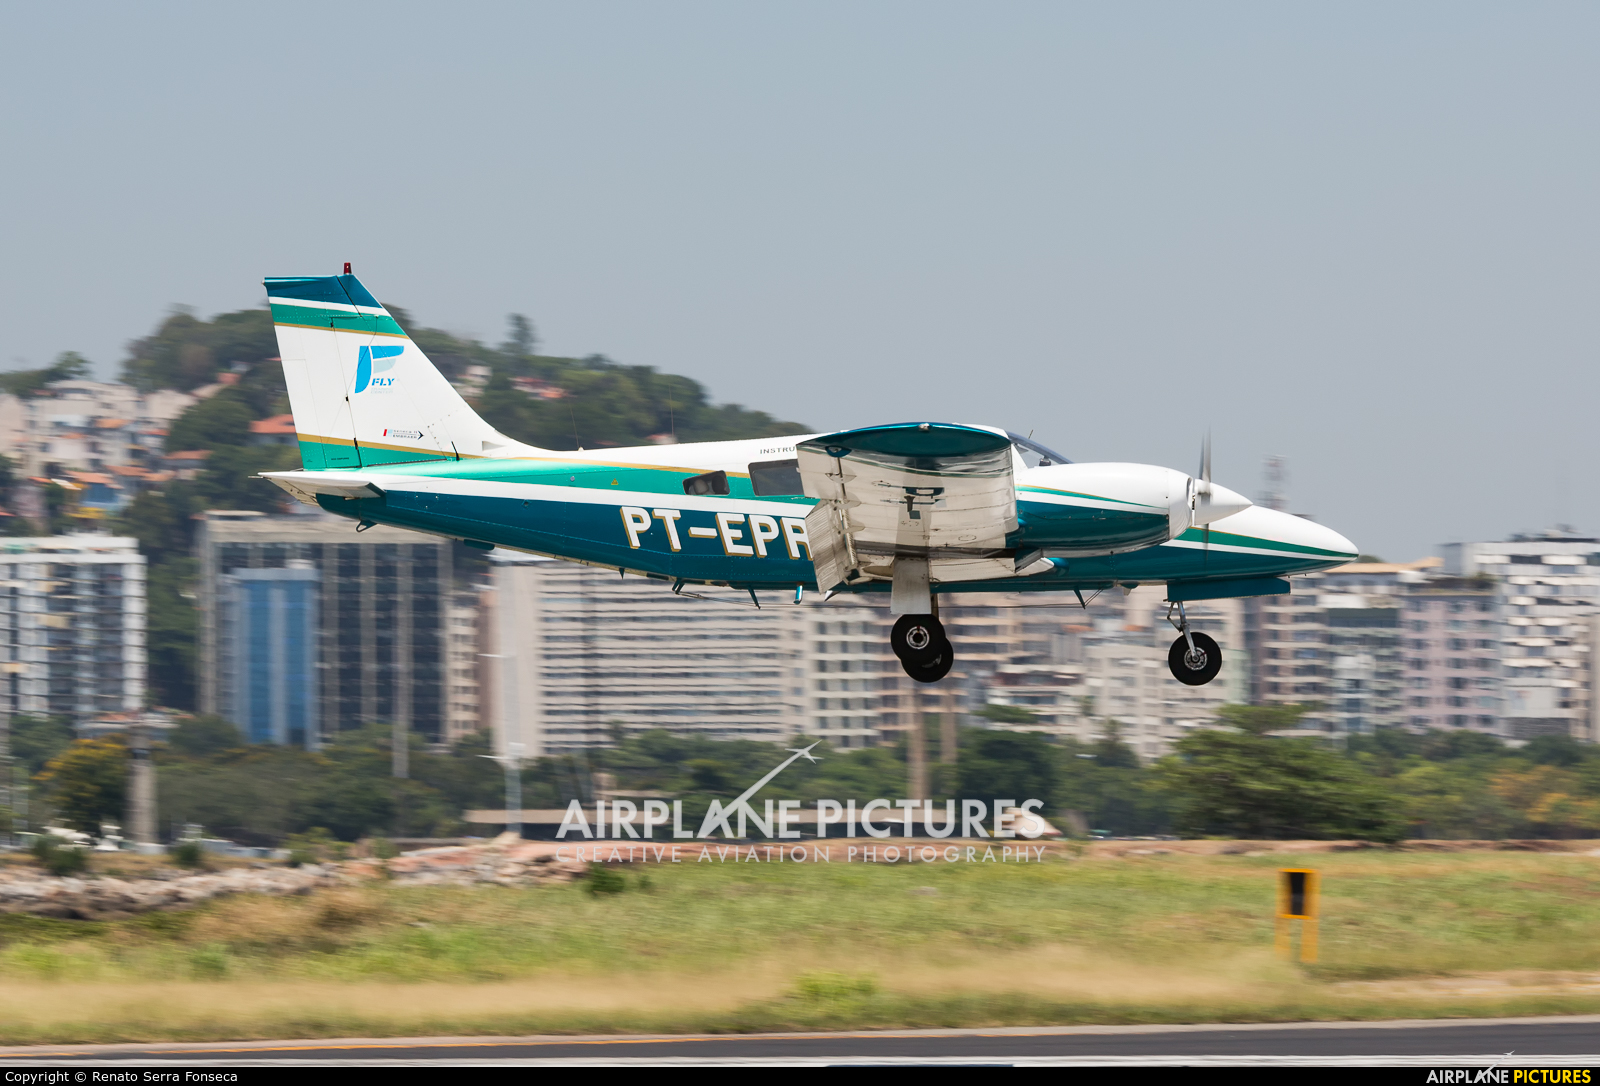 FLY Training Center PT-EPR aircraft at Rio de Janeiro - Santos Dumont